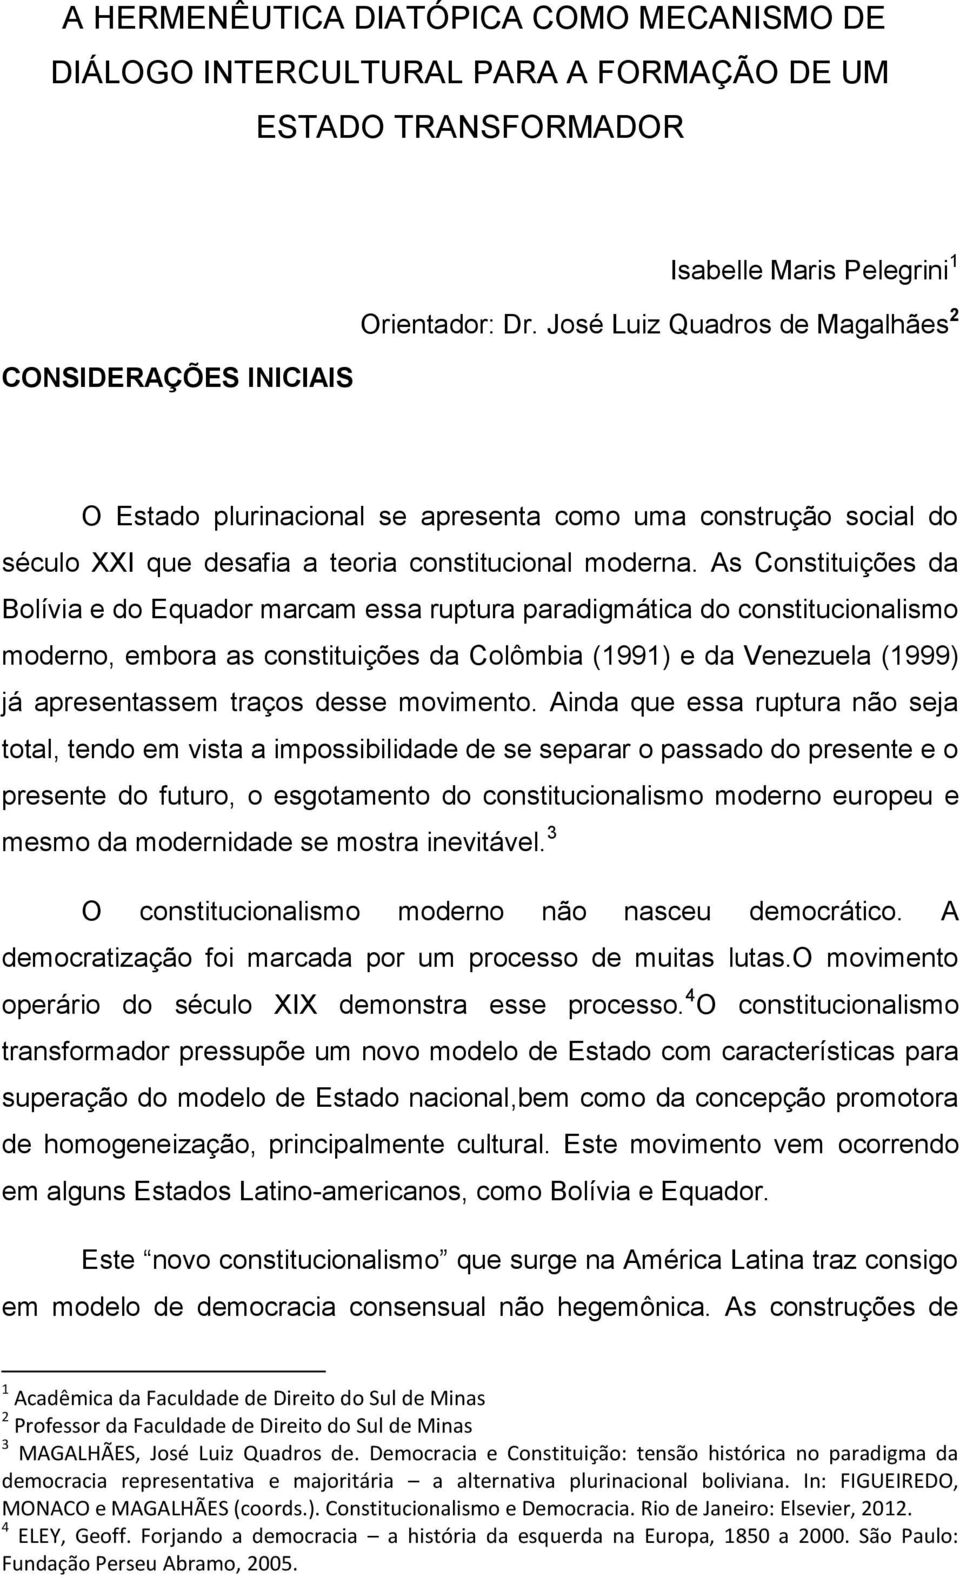 As Constituições da Bolívia e do Equador marcam essa ruptura paradigmática do constitucionalismo moderno, embora as constituições da Colômbia (1991) e da Venezuela (1999) já apresentassem traços